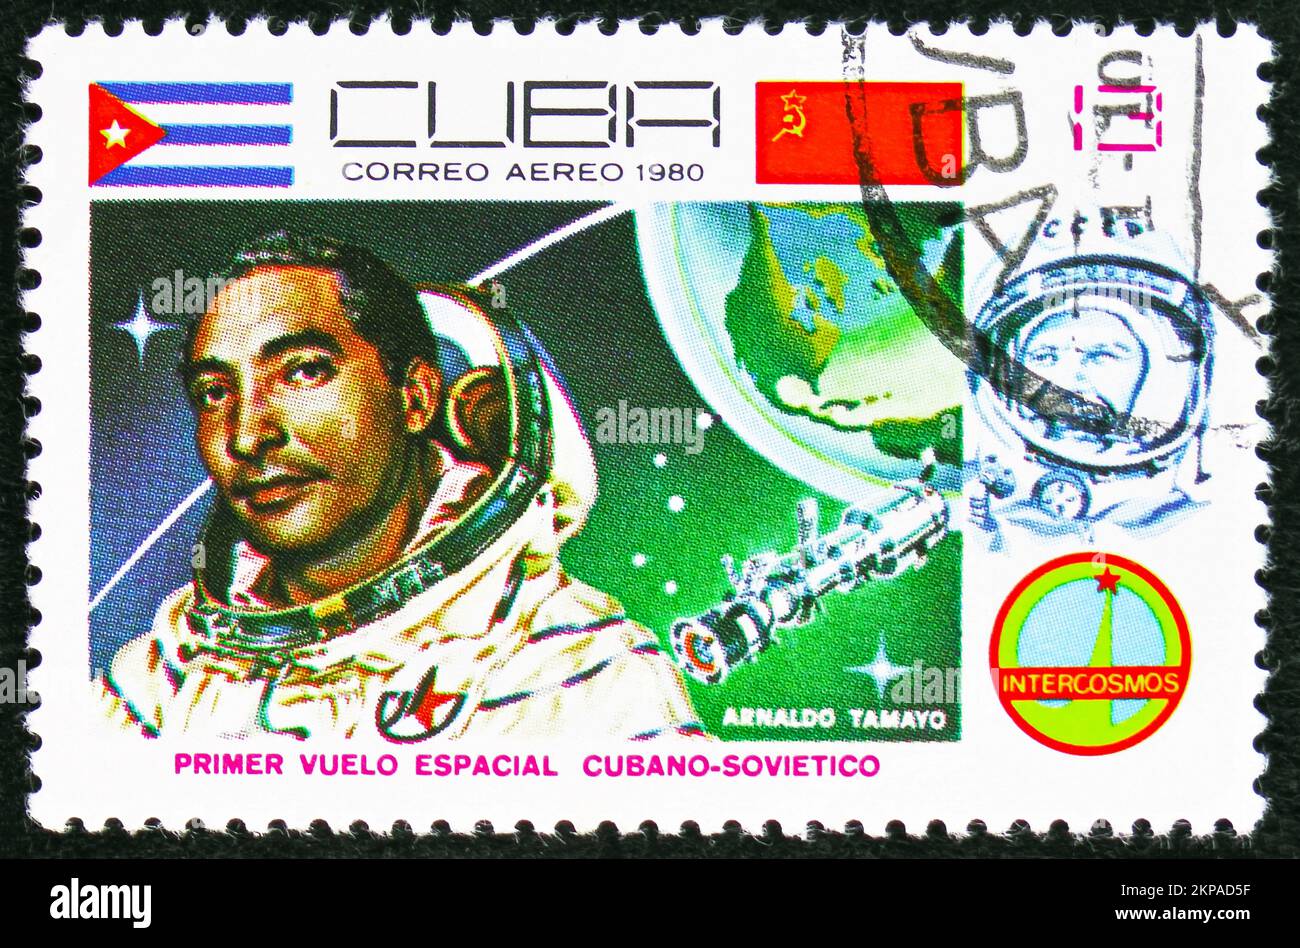 MOSCOU, RUSSIE - 29 OCTOBRE 2022 : timbre-poste imprimé à Cuba montre le Premier cosmonaute cubain, Arnaldo Tamayo, série spatiale, vers 1980 Banque D'Images